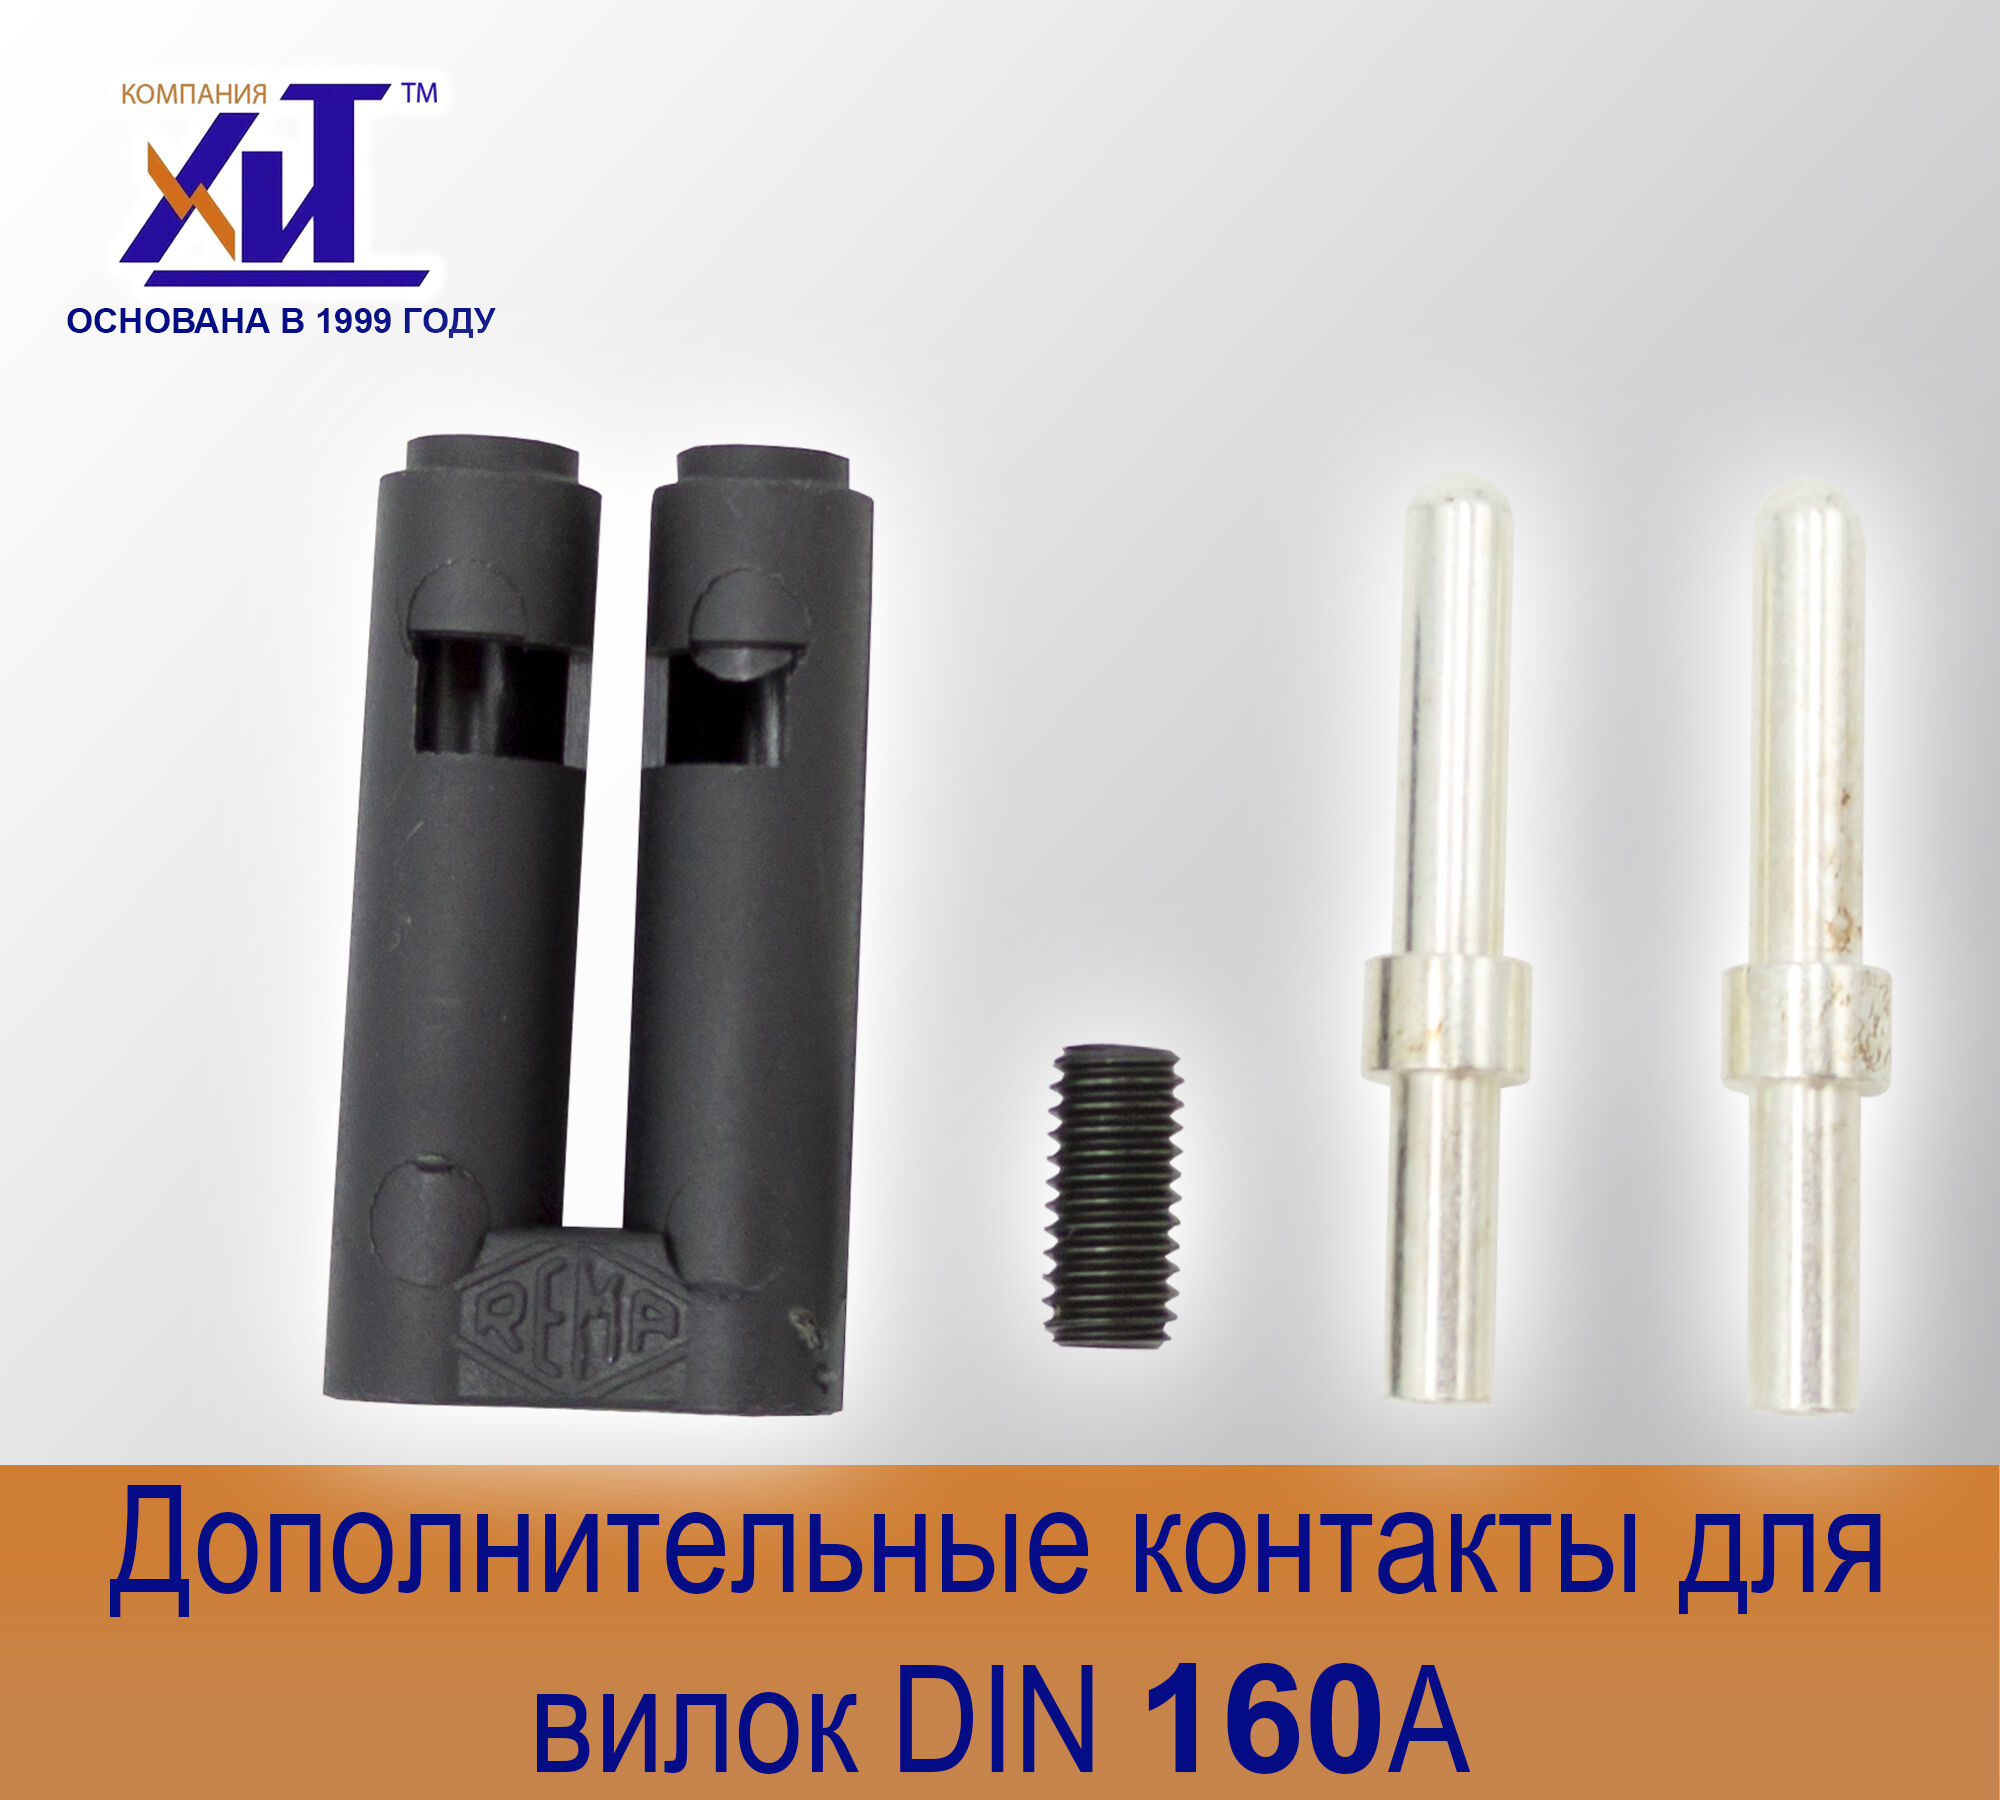 Комплект направляющих контактов DIN 160 А для вилок